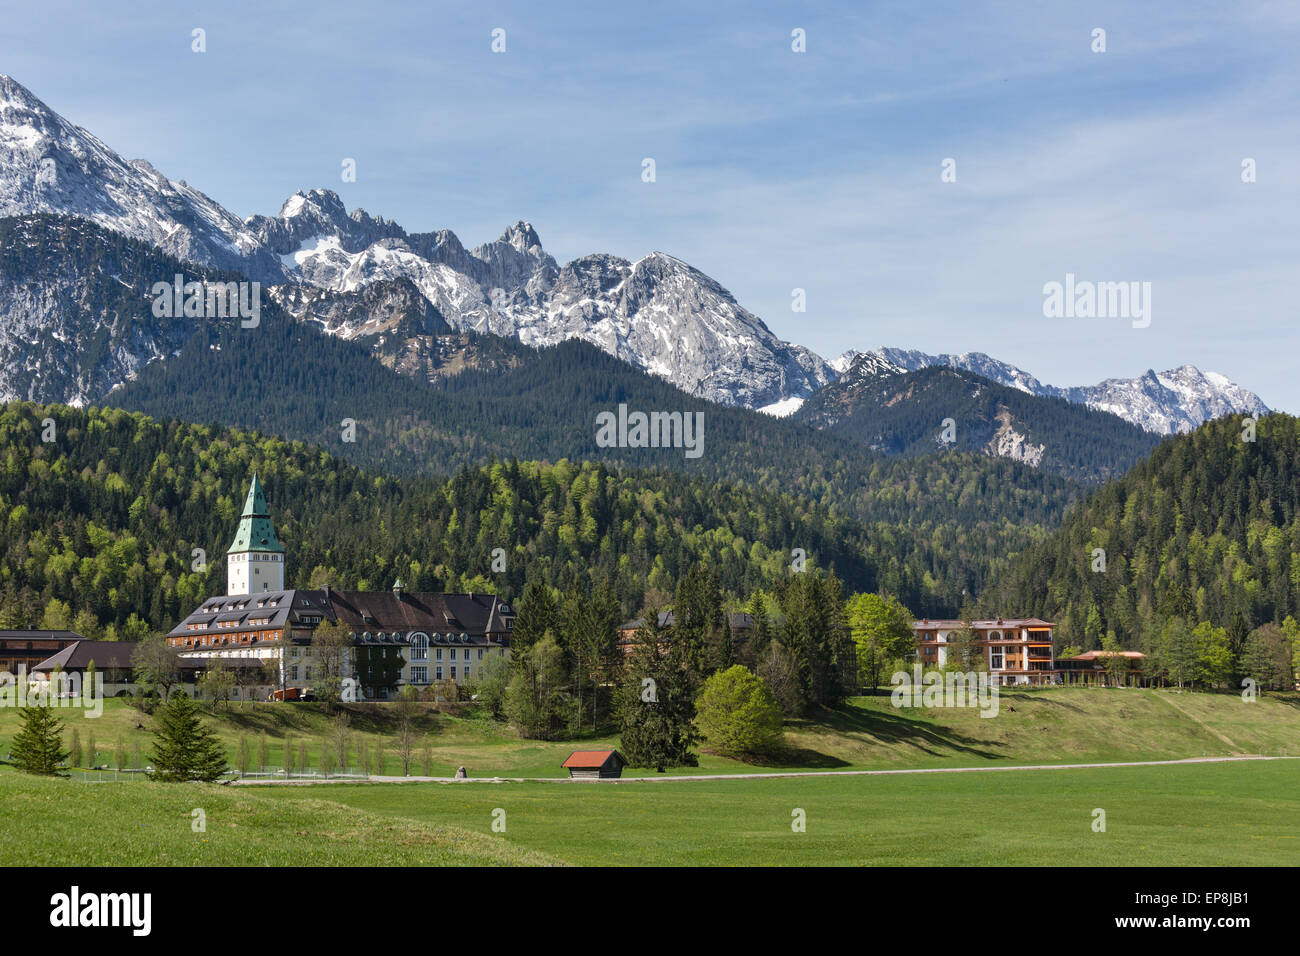 Schloss Elmau castle hotel, lieu de la sommet du G7 de 2015, Klais, du Wetterstein, Werdenfelser Land, Haute-Bavière Banque D'Images